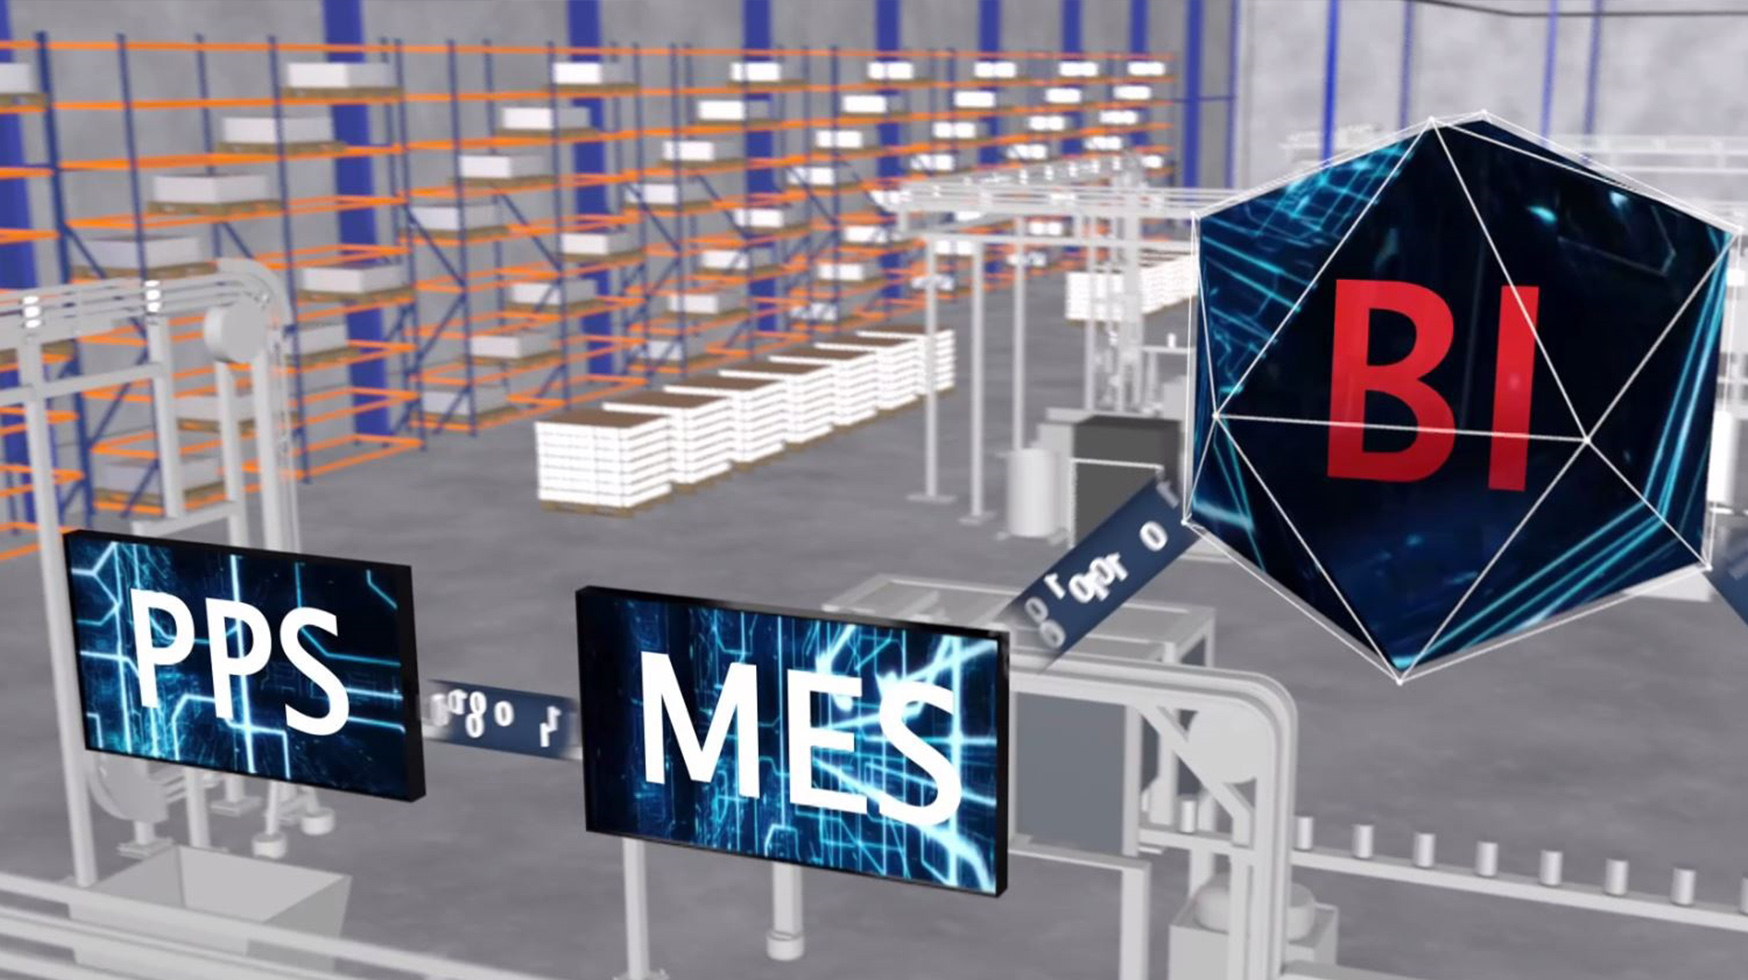 Das Foto zeigt eine Illustartion einer digitalen vernetzen Produktionsstätte. Zu lesen ist PPS, MES und BI. Die einzelnen Worte sind durch Zahlenreihen, die aus 1 und 0 bestehen, miteinander verbunden.